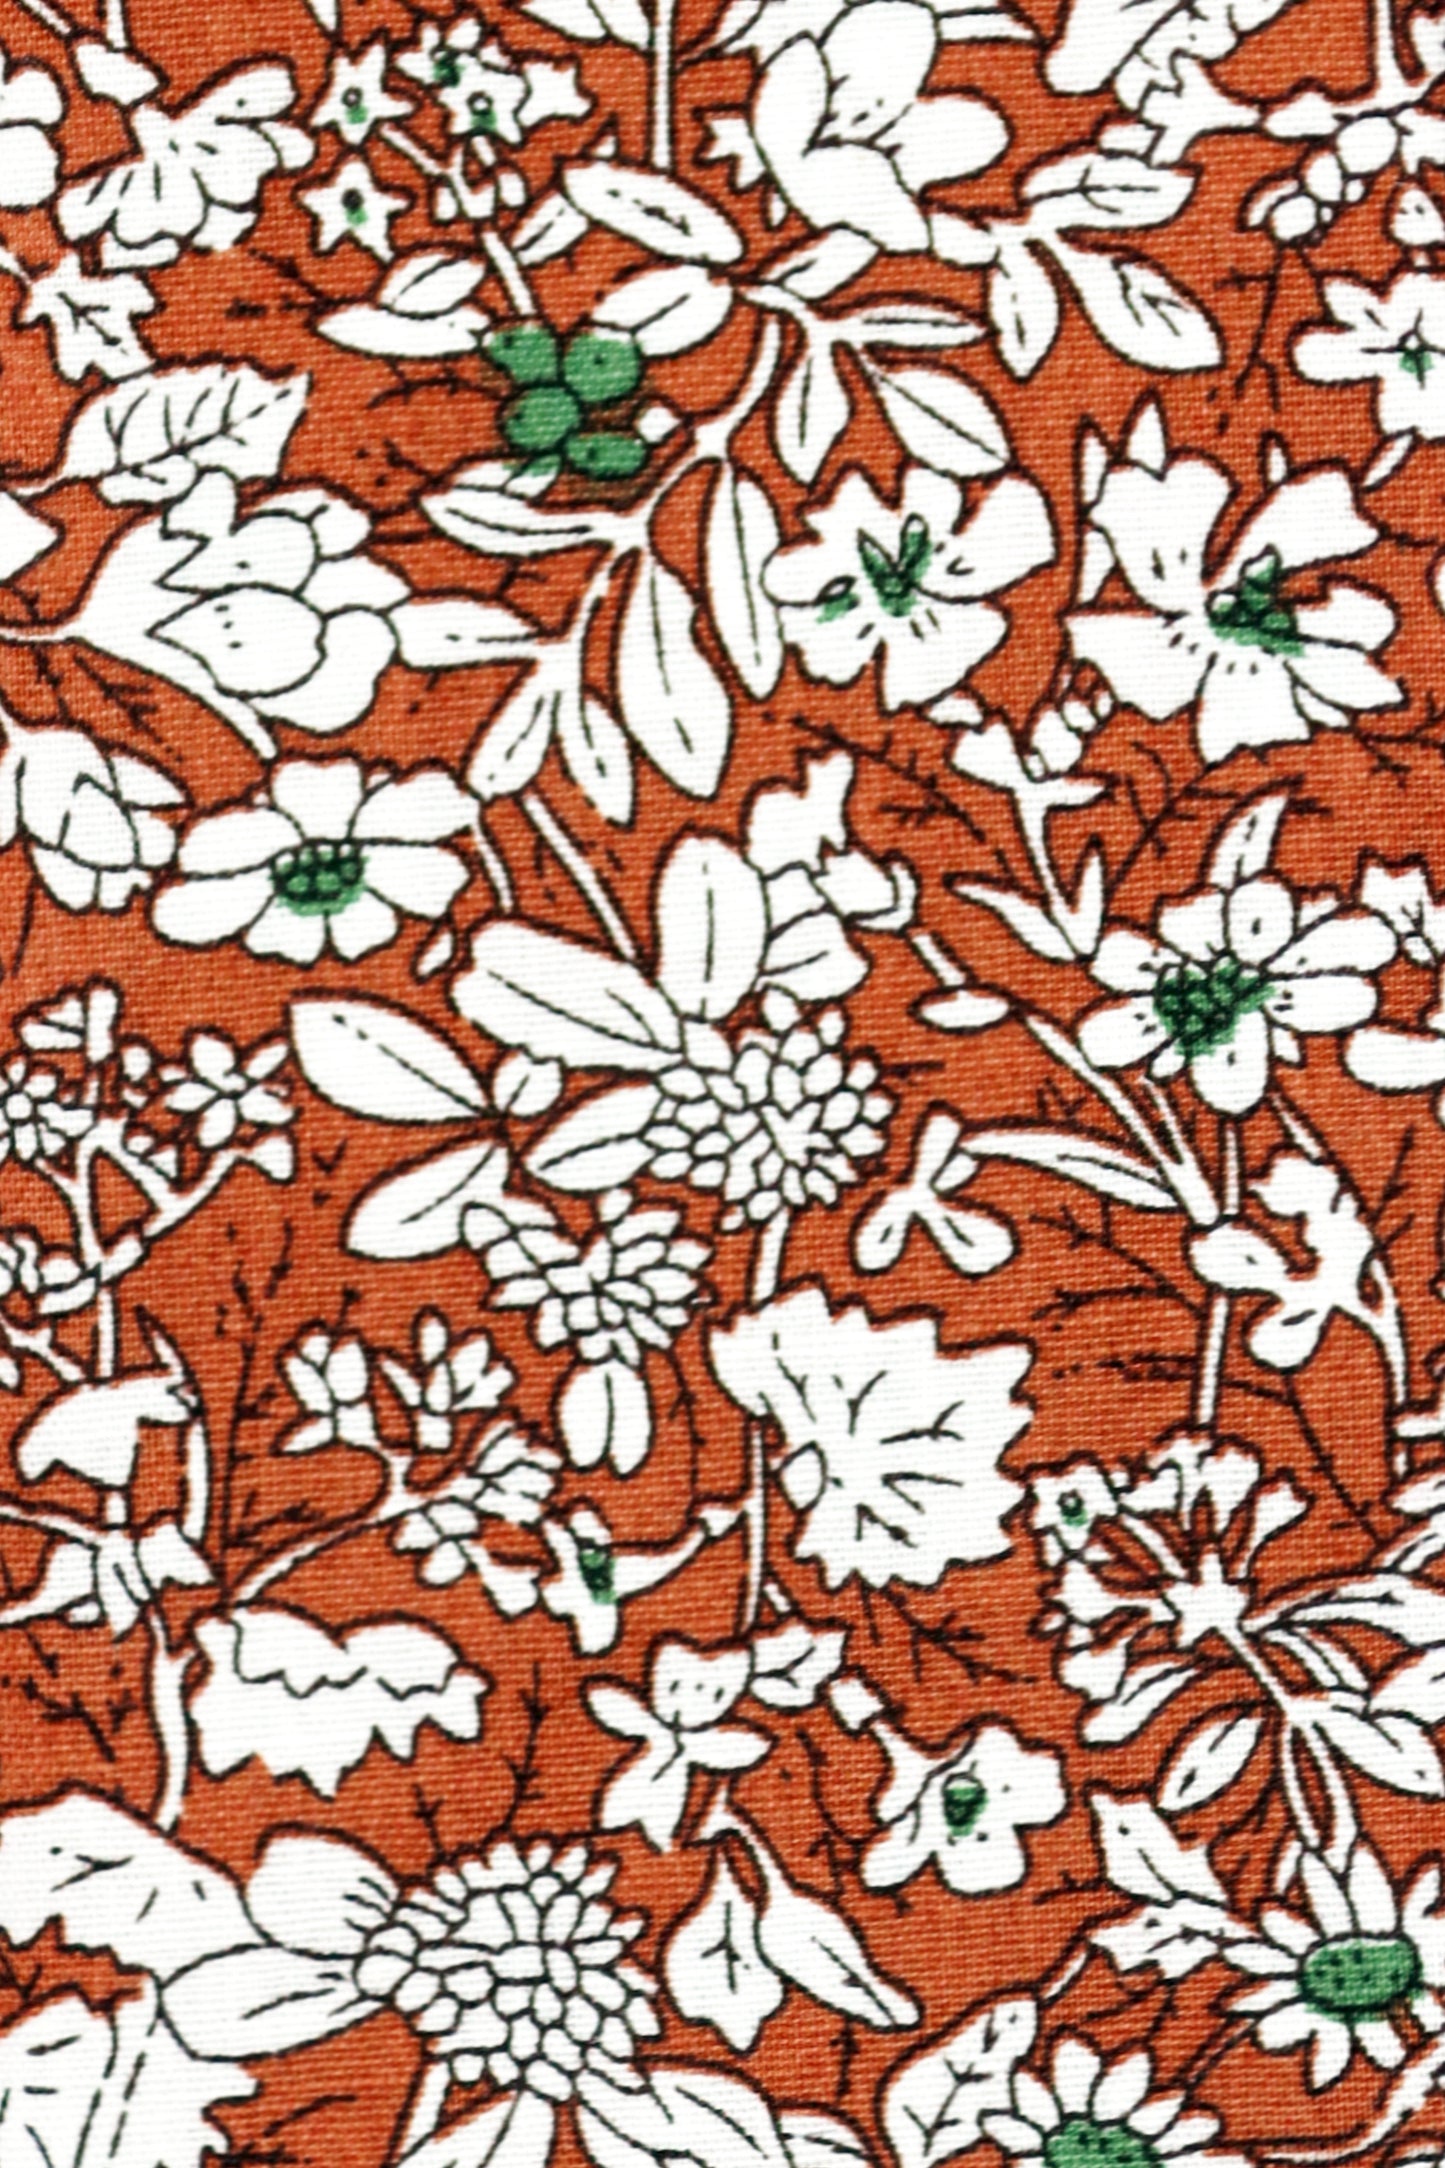 100% Cotton Floral Print Bow Tie - Orange & White